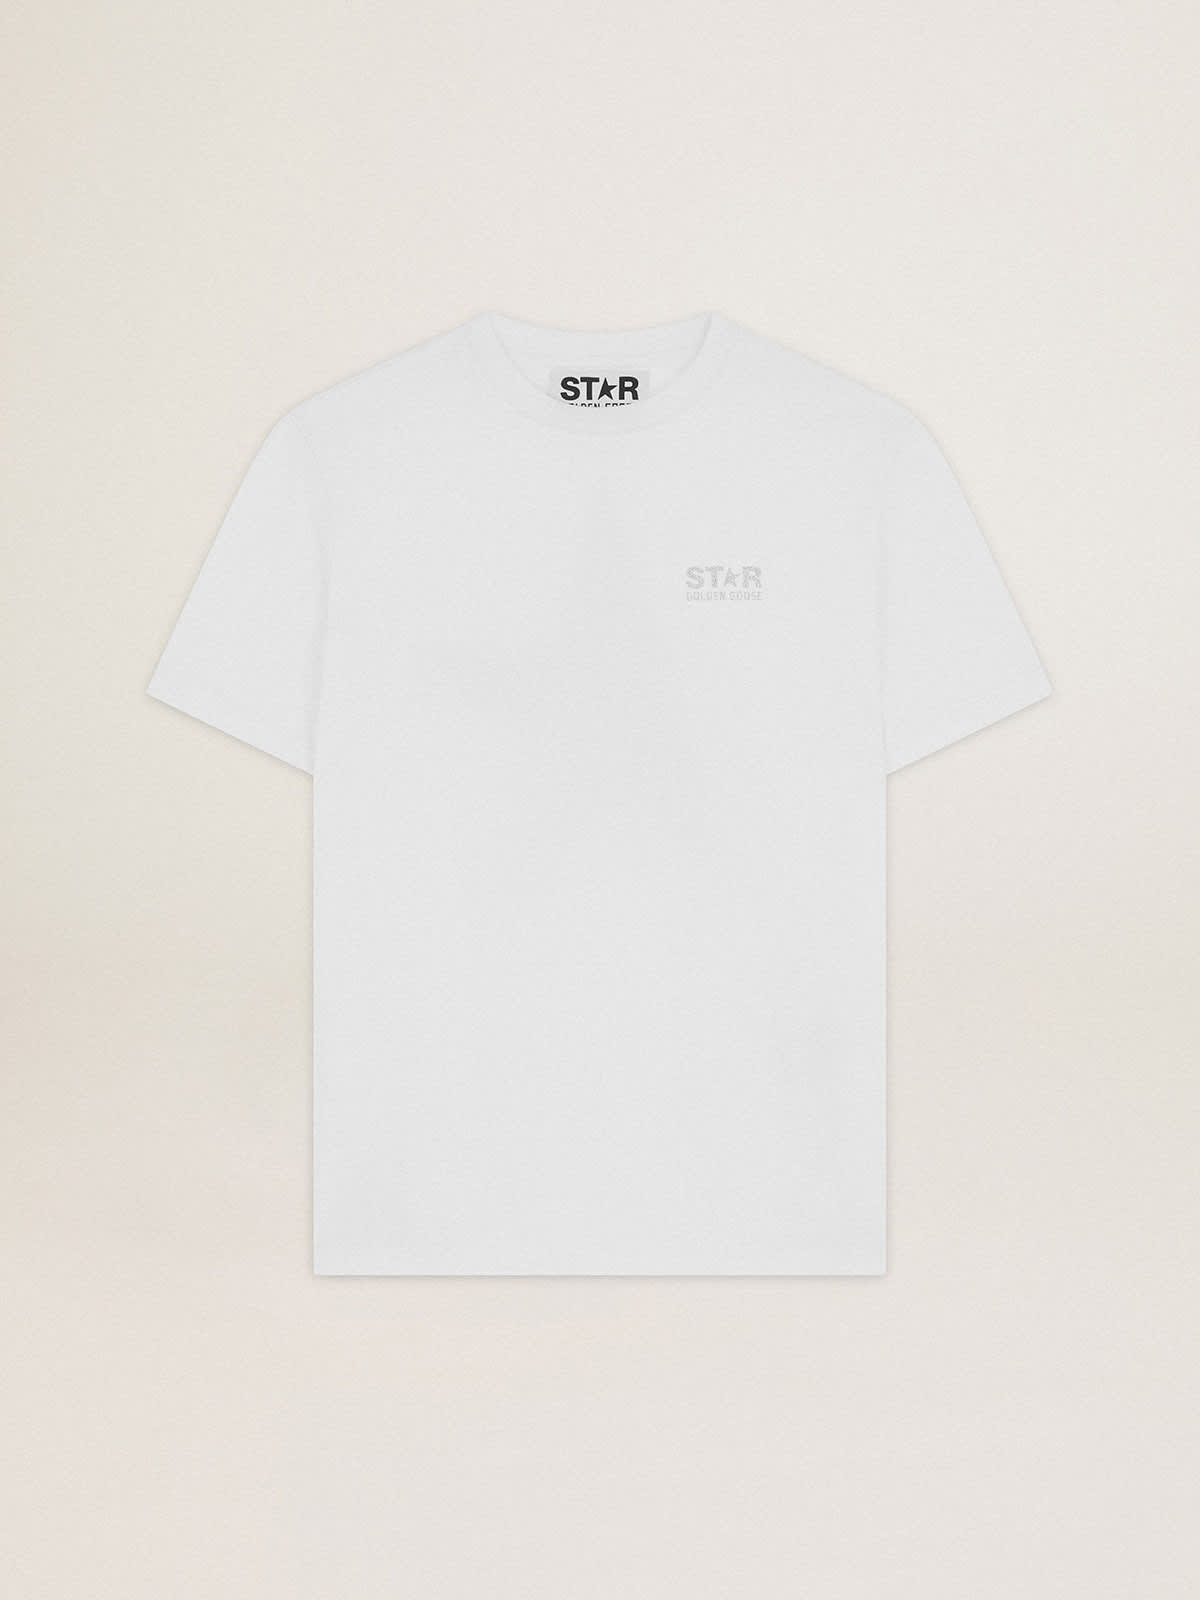 Golden Goose - T-shirt blanc collection Star avec logo et étoile à paillettes argentées in 